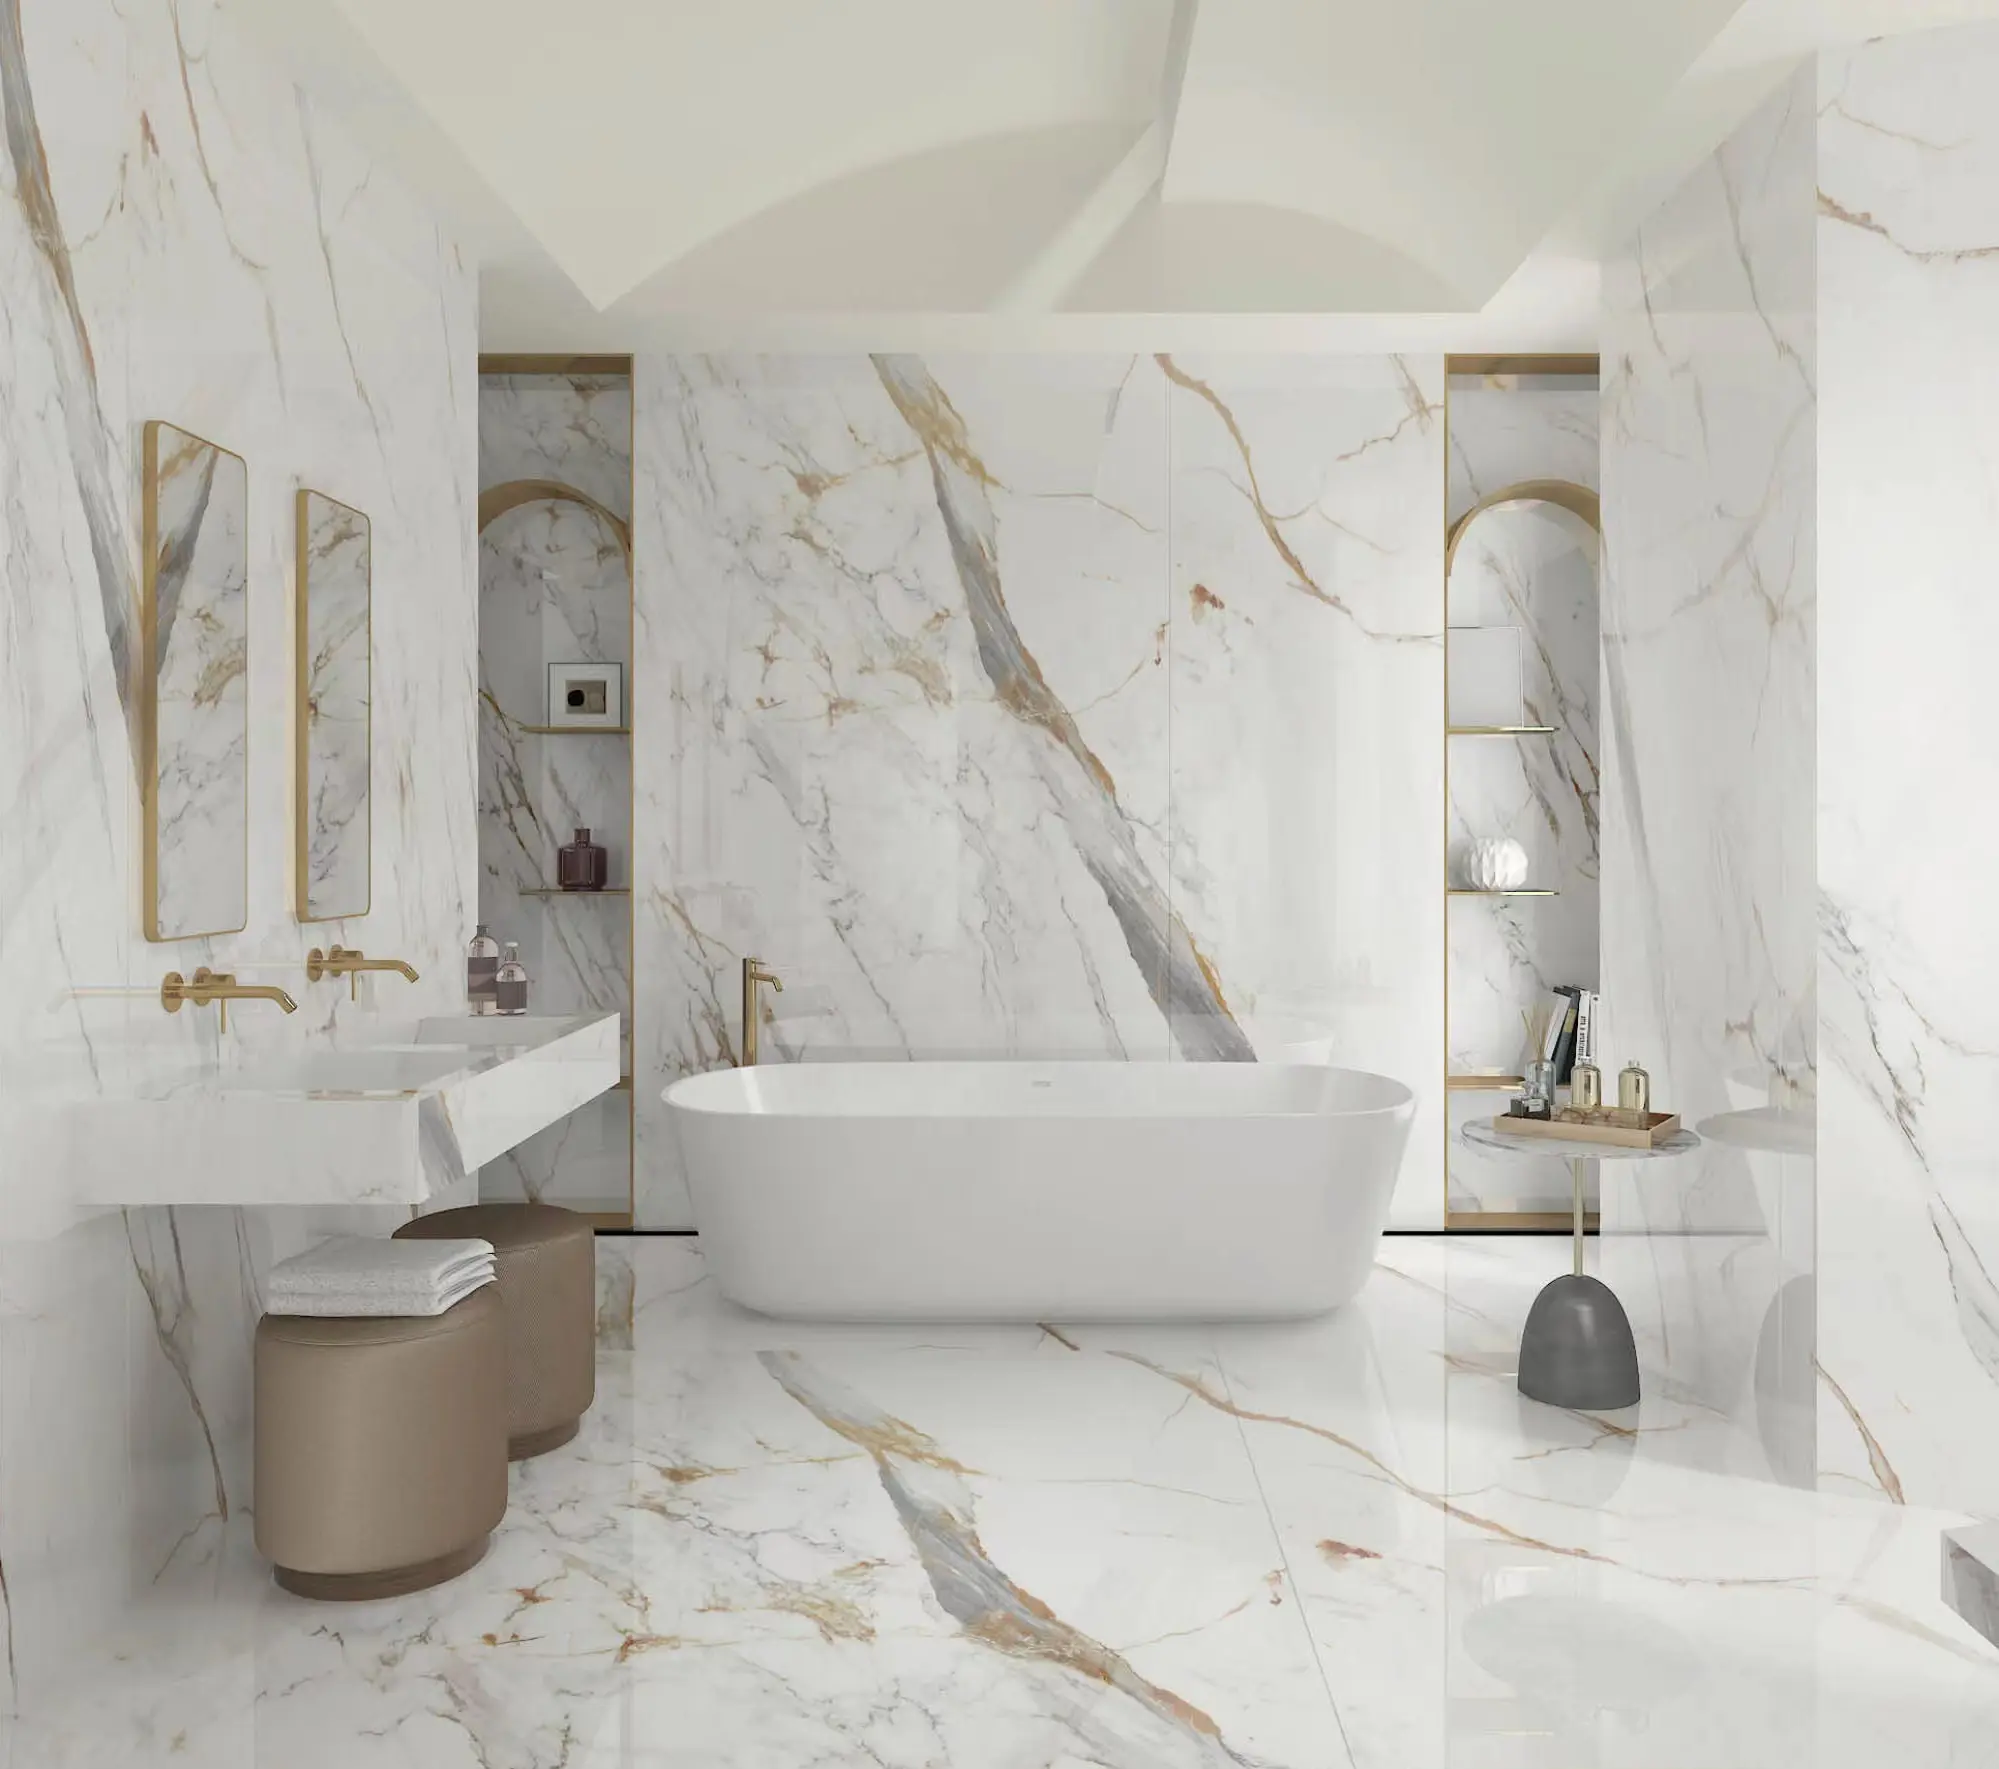 Conception de projets d'hôtel, carreaux de marbre italien blanc poli et dalle de marbre